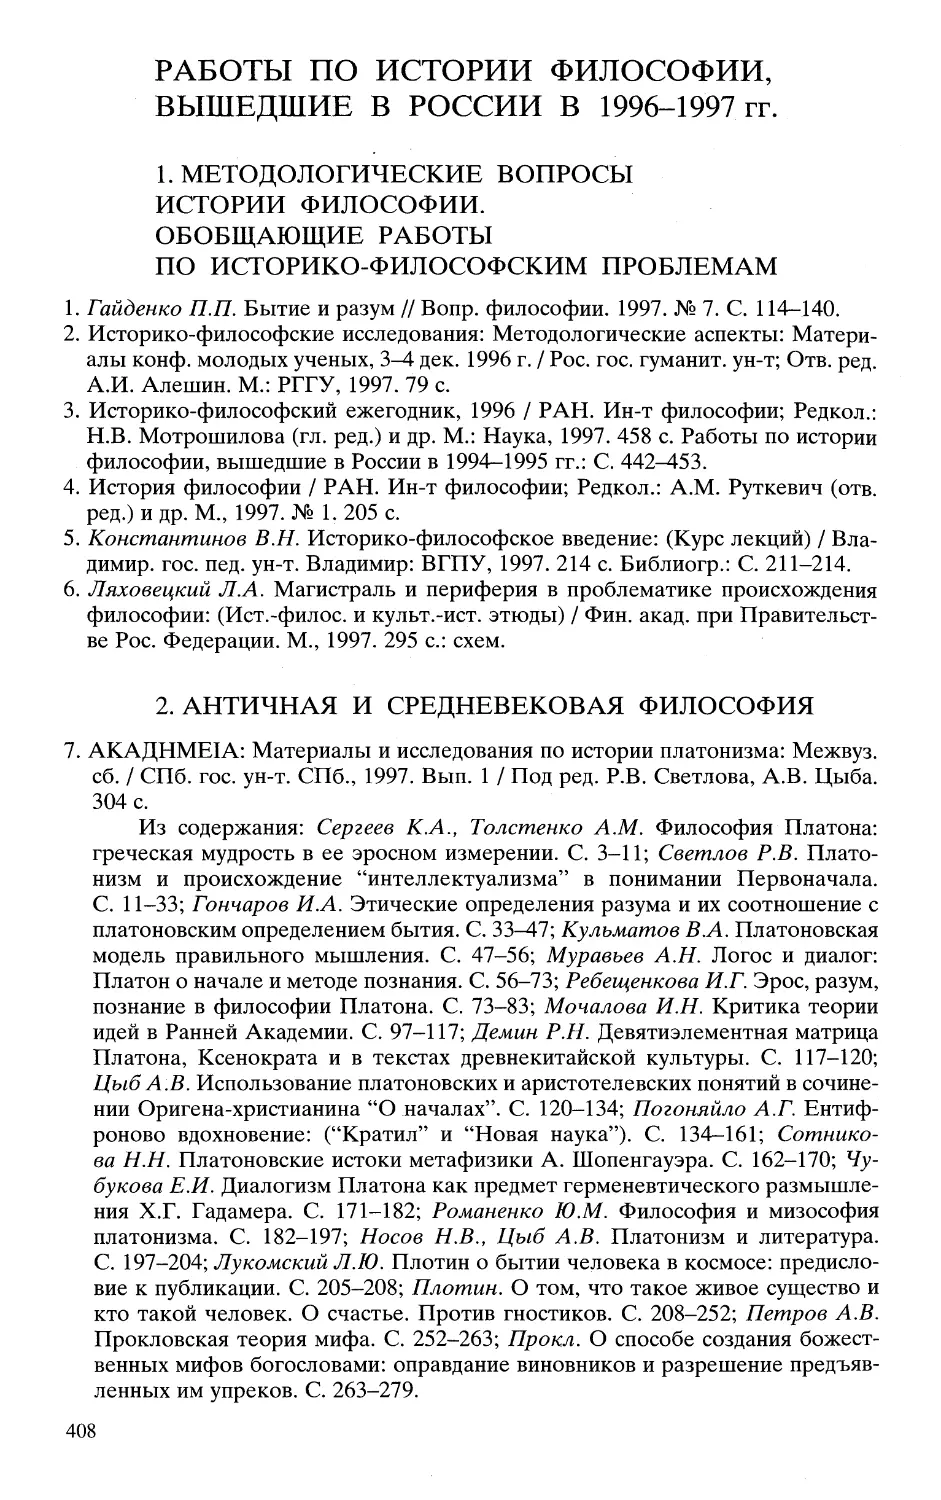 Работы по истории философии вышедшие в России в 1996-1997 гг.